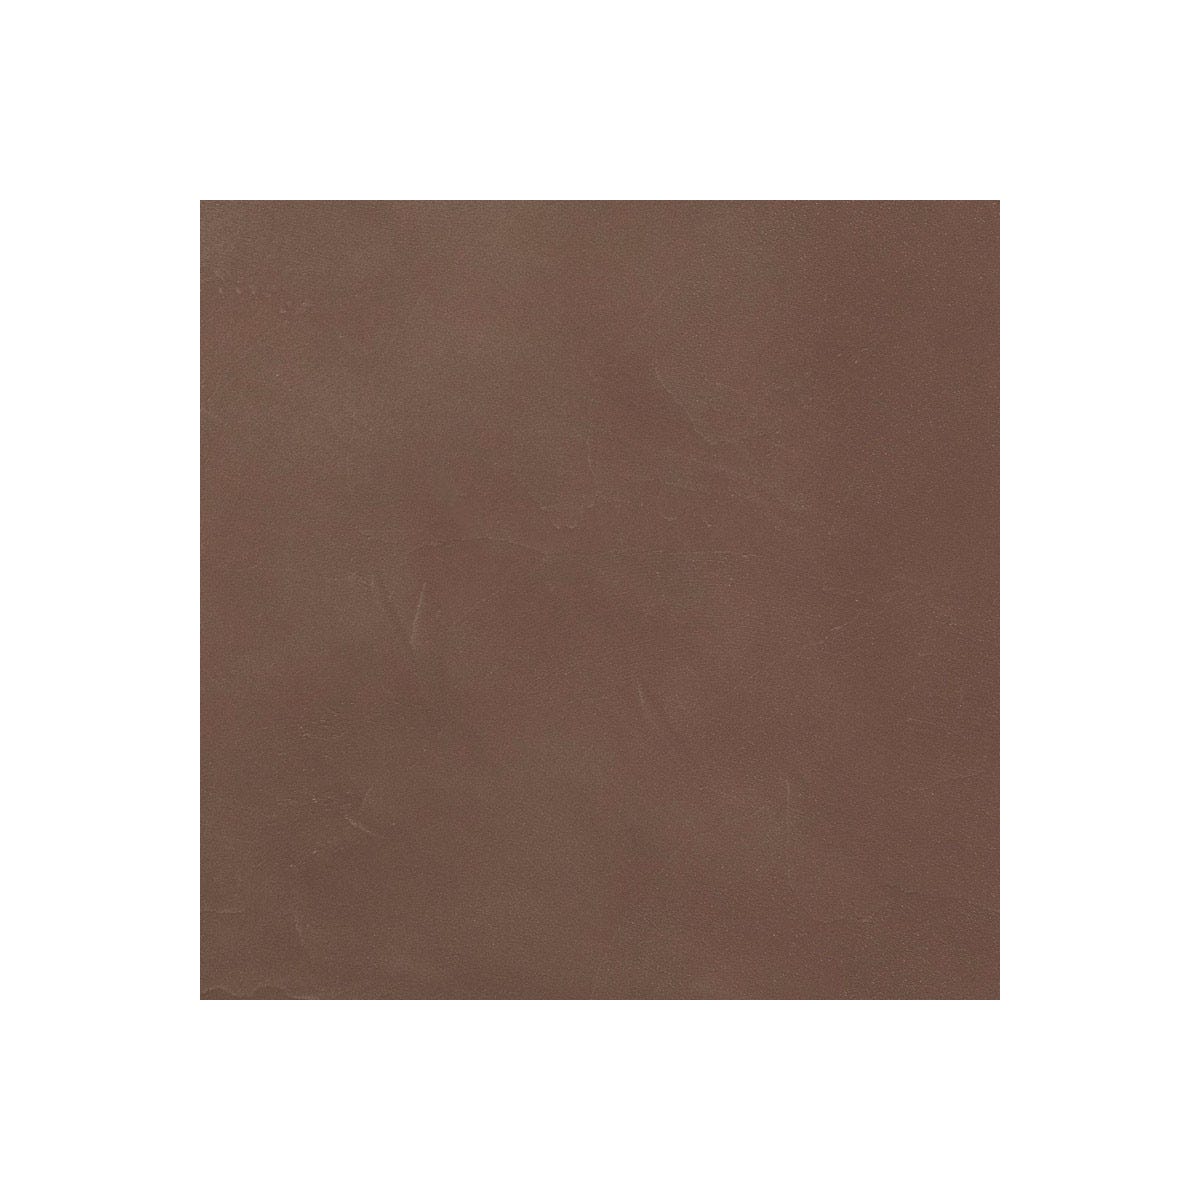 Béton Ciré Sol en - Primaire et vernis de finition inclus - 5 m² (en 2 couches) - Cacao Marron - ARCANE INDUSTRIES 1